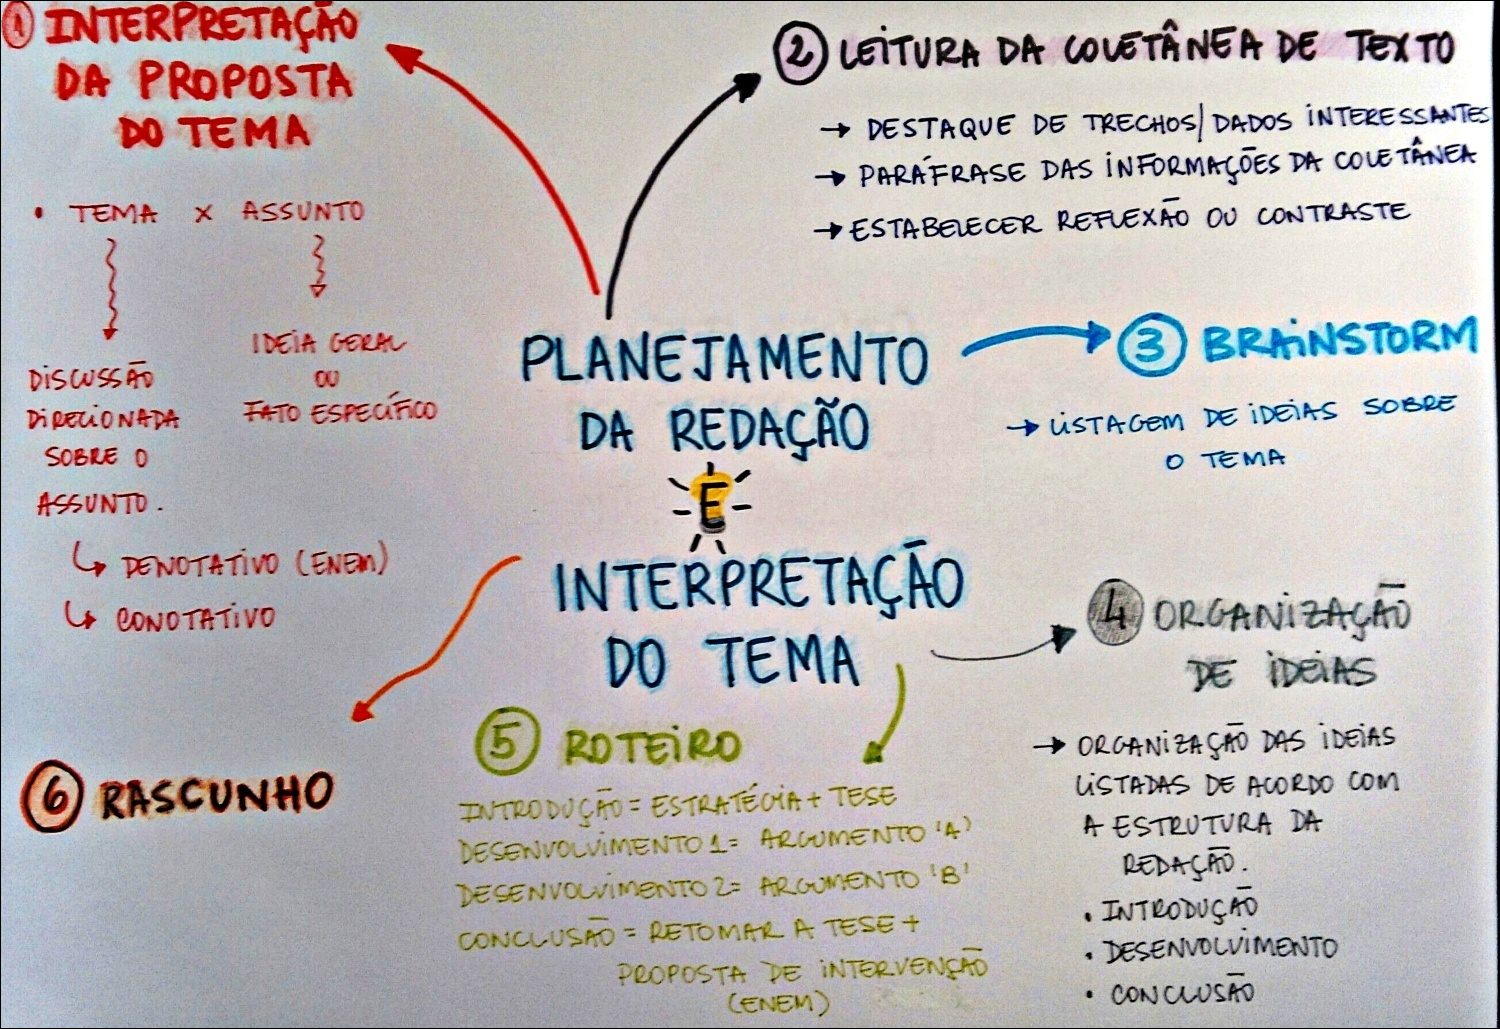 Mapa mental com INTERPRETAÇÃO no centro, ramificando-se para LEITURA DA COLETÂNEA DE TEXTO e PROPOSTA